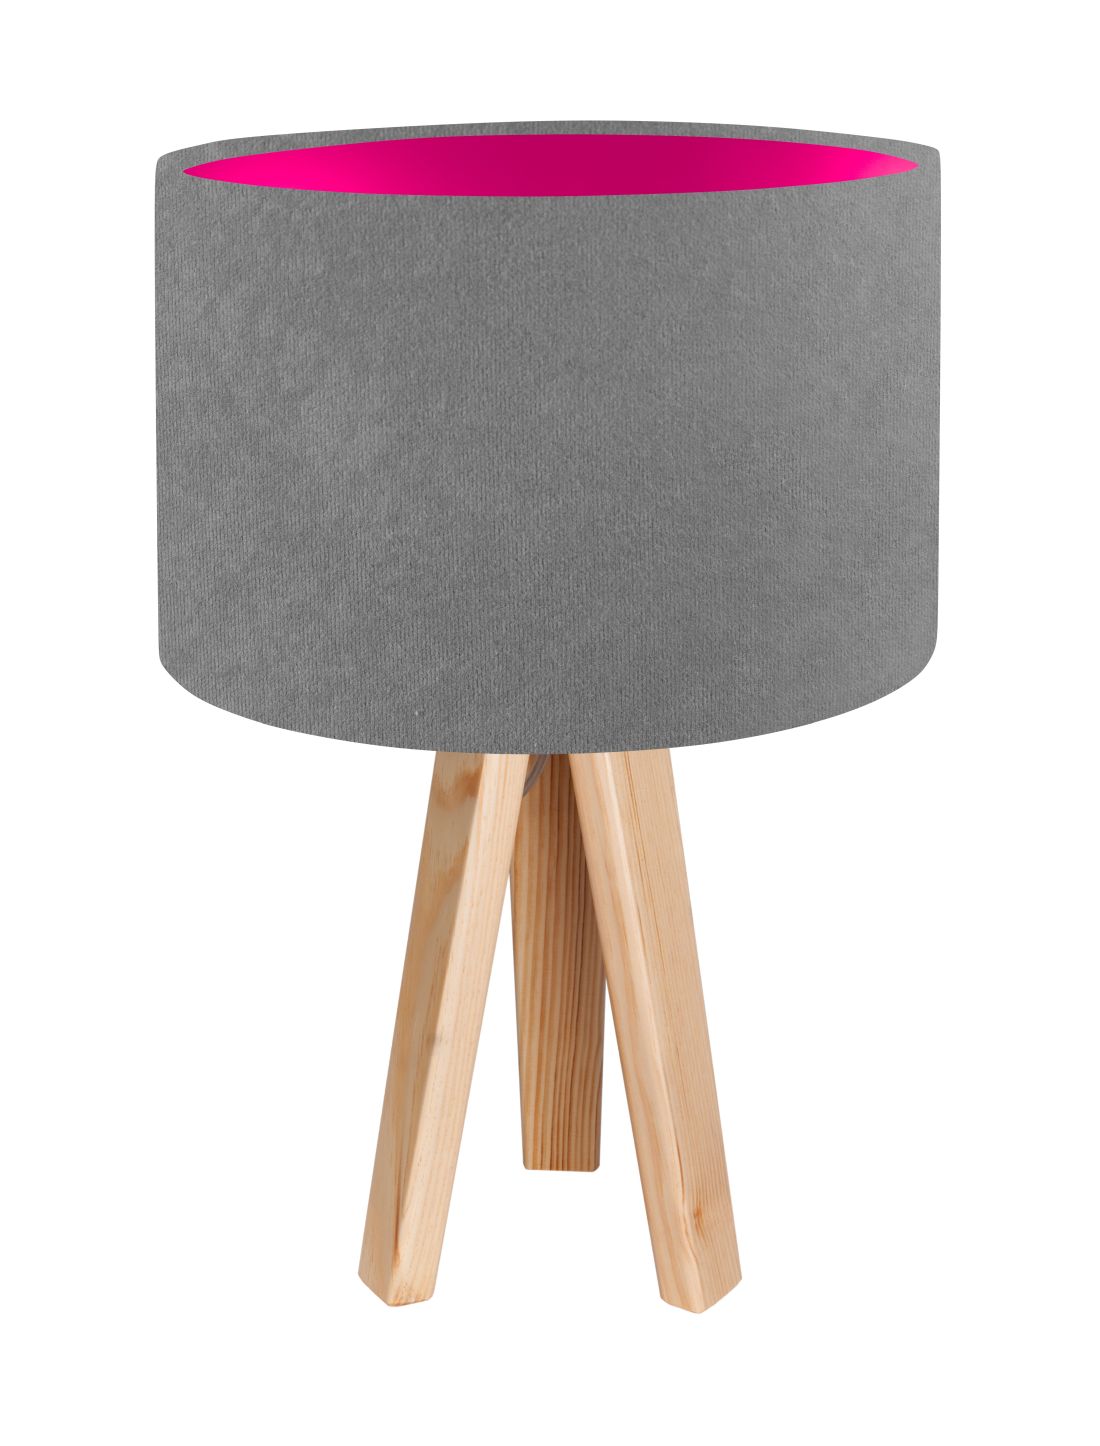 Tischlampe Holz Dreibein Grau Pink 46cm Retro JERRY